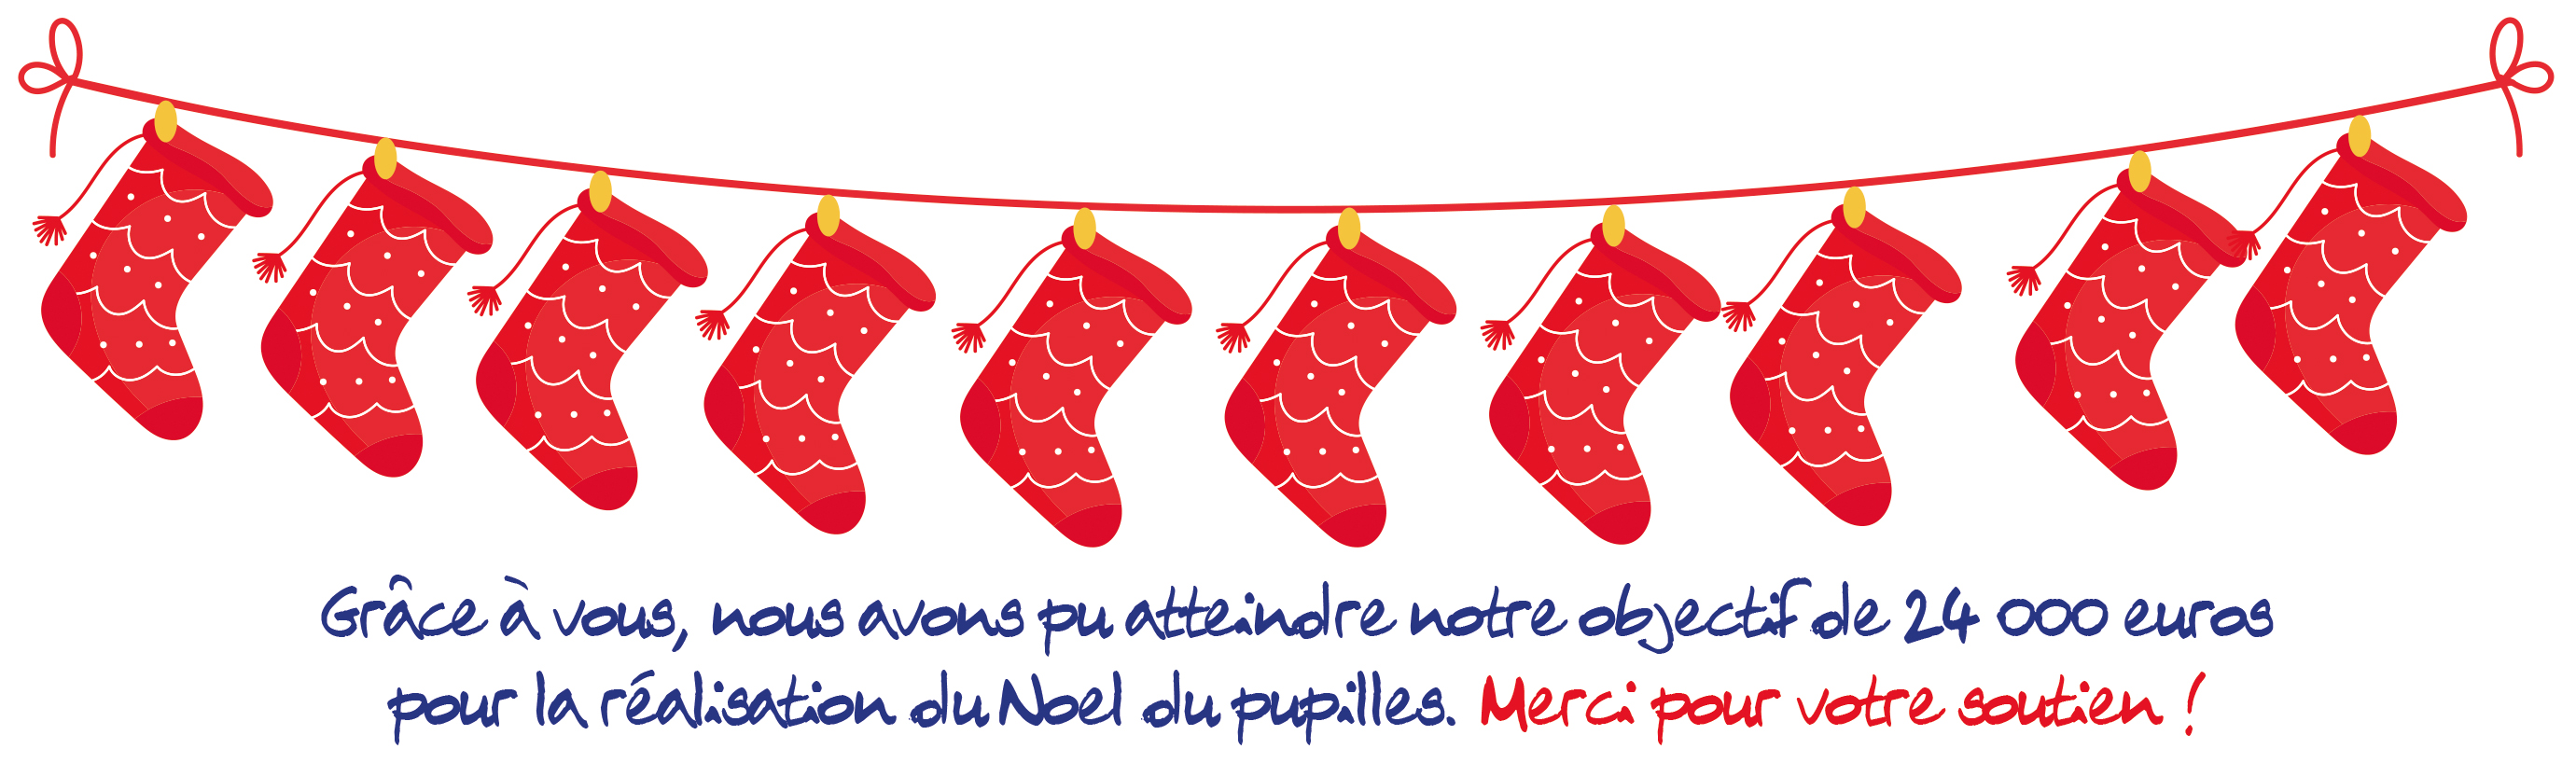 Chaussettes Noël ODP